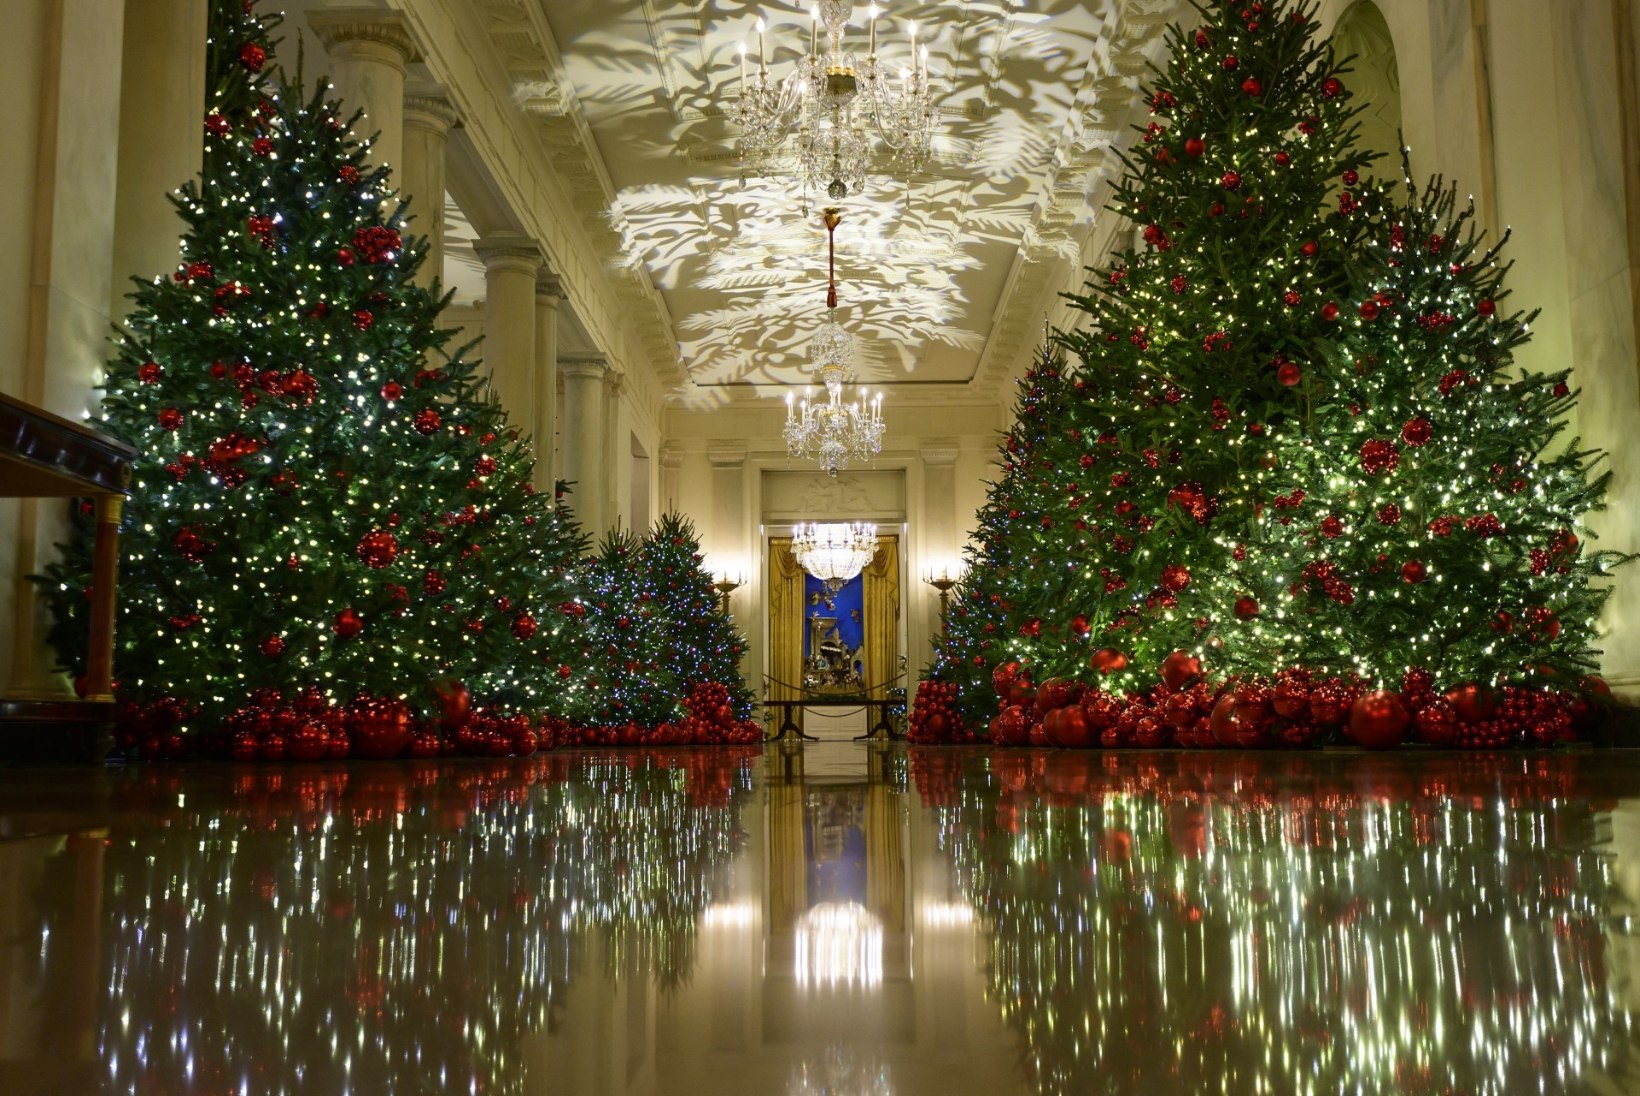 VÕTAB SILME EES KIRJUKS: Melania Trump paljastab, milline näeb jõuluehteis Valge Maja välja seestpoolt!